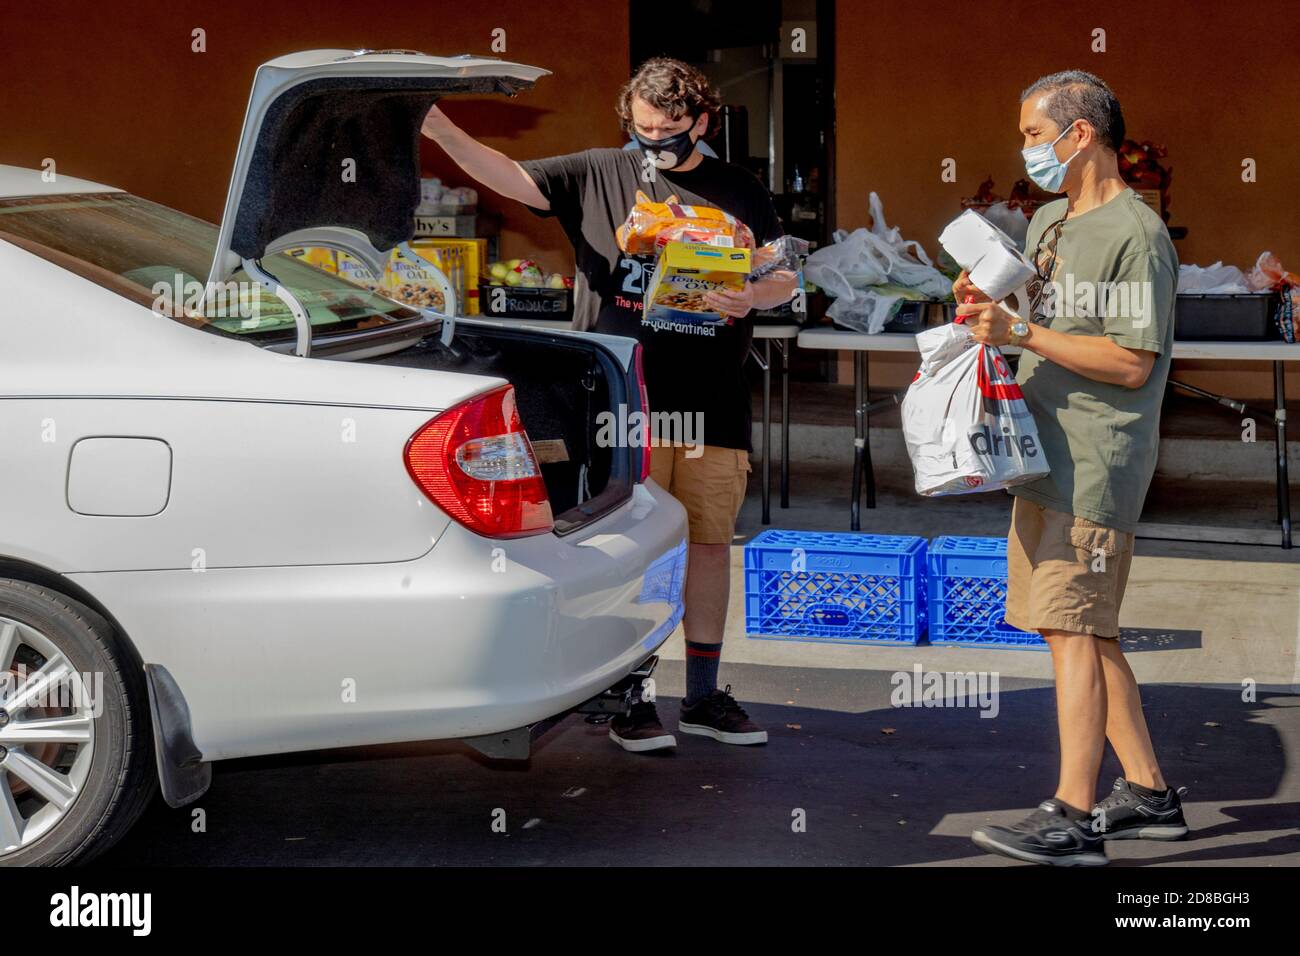 Les bénévoles de la garde-manger d'une église catholique du sud de la Californie distribuent des produits d'épicerie à des organismes caritatifs. Notez la raison des masques faciaux Banque D'Images